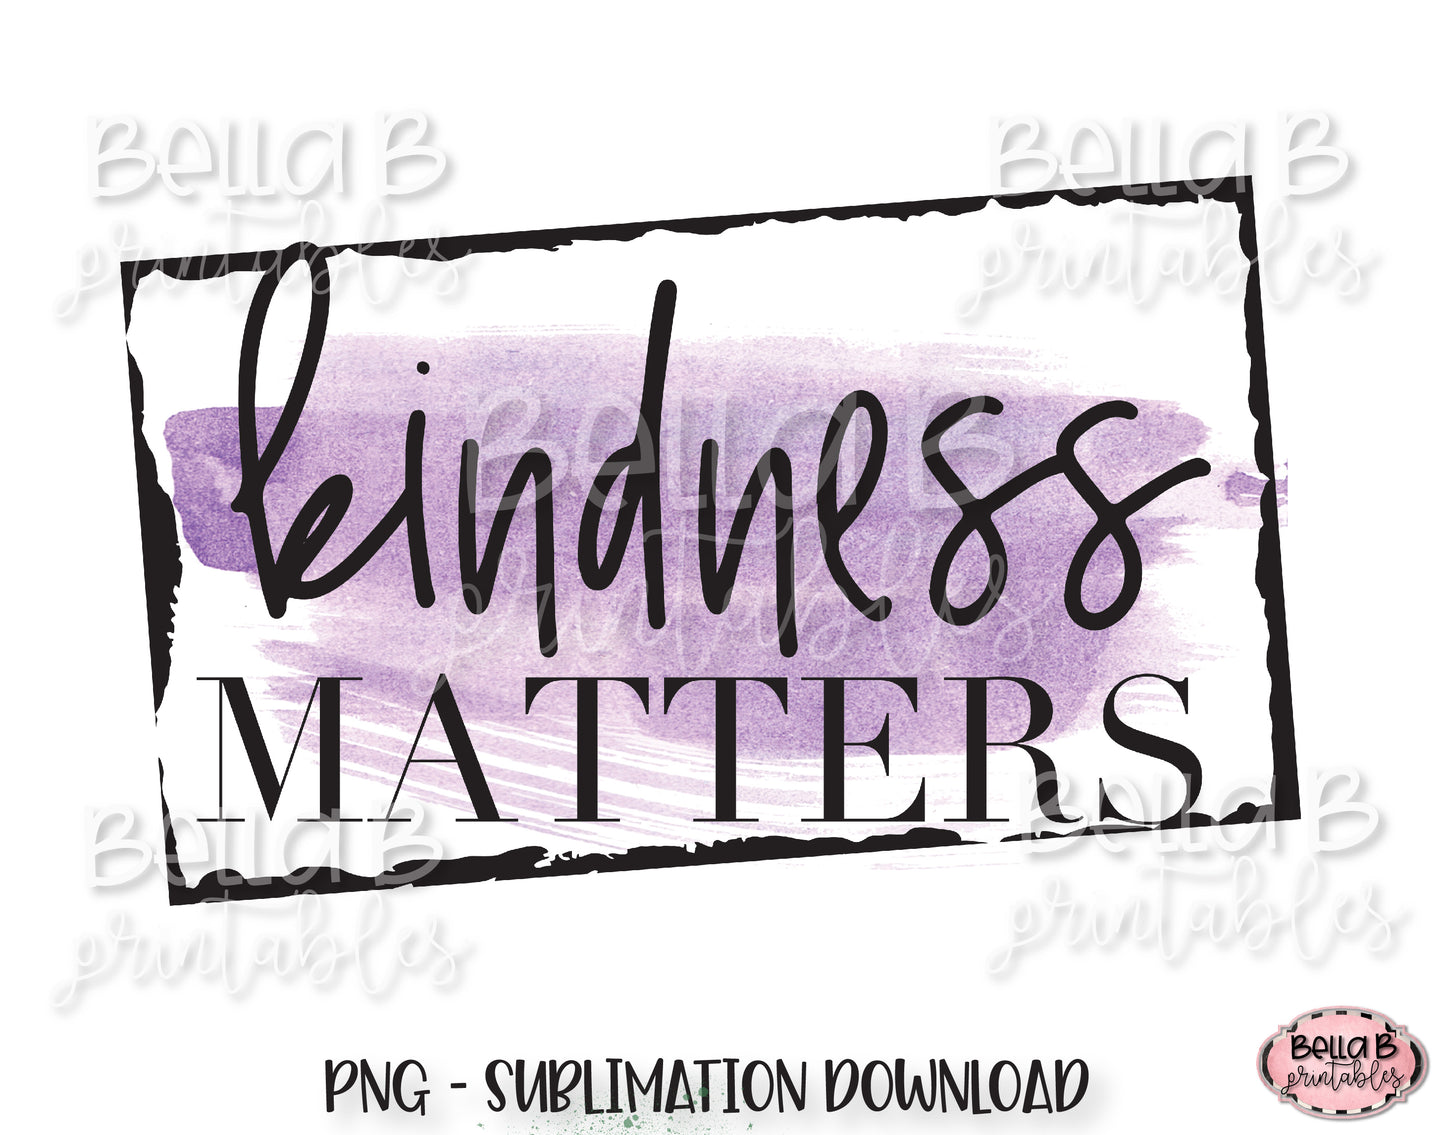 Kindness Matters Sublimation Design, Kindness Sublimation Design